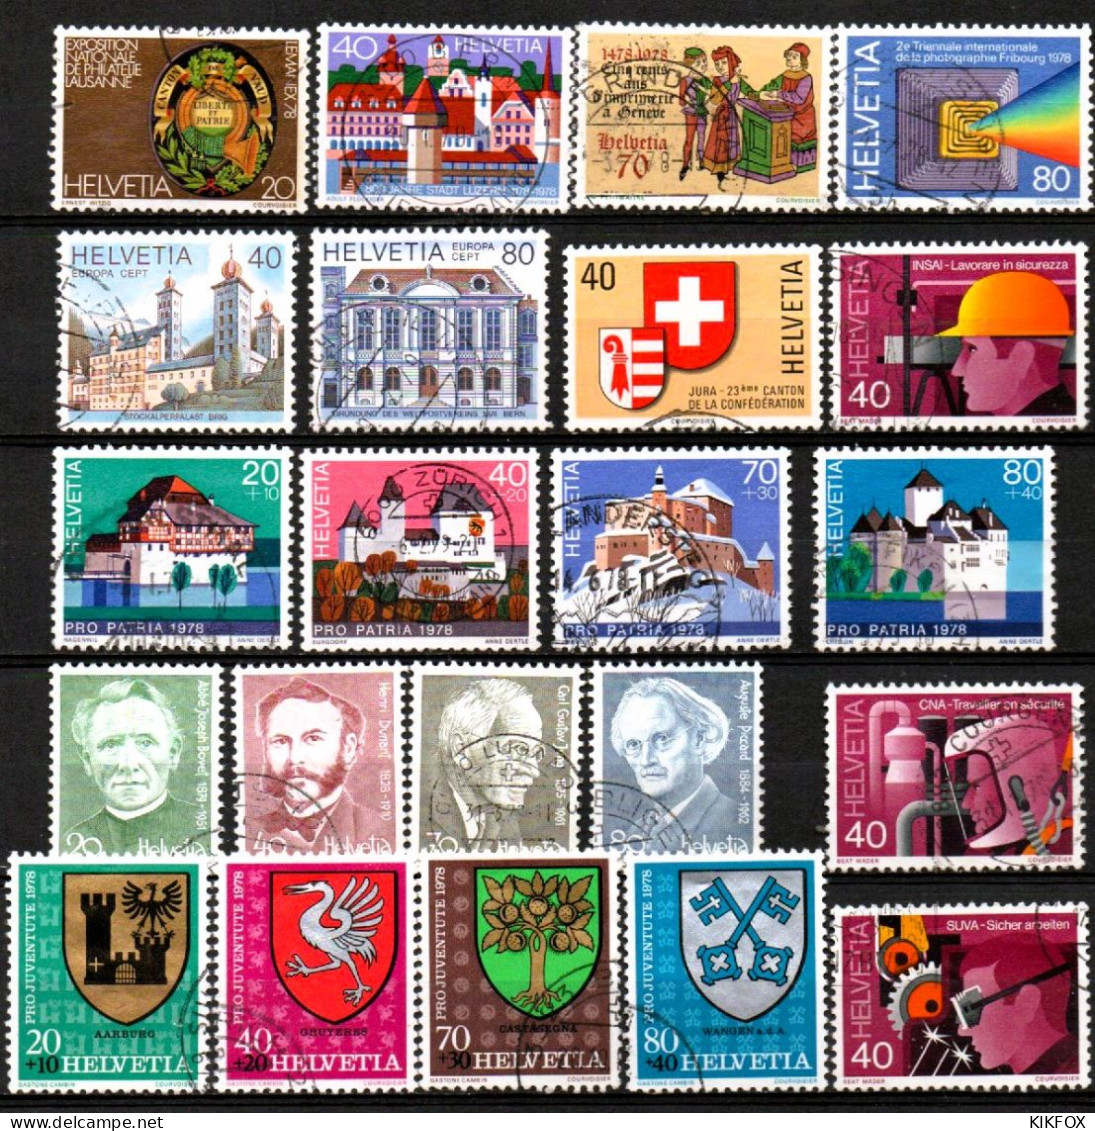 SUISSE ,SCHWEIZ,1978 , AUS   Mi. 1116 - 1145, JAHRGANG OHNE MI BL 23, 1120- 1127 GESTEMPELT, OBLITERE - Used Stamps